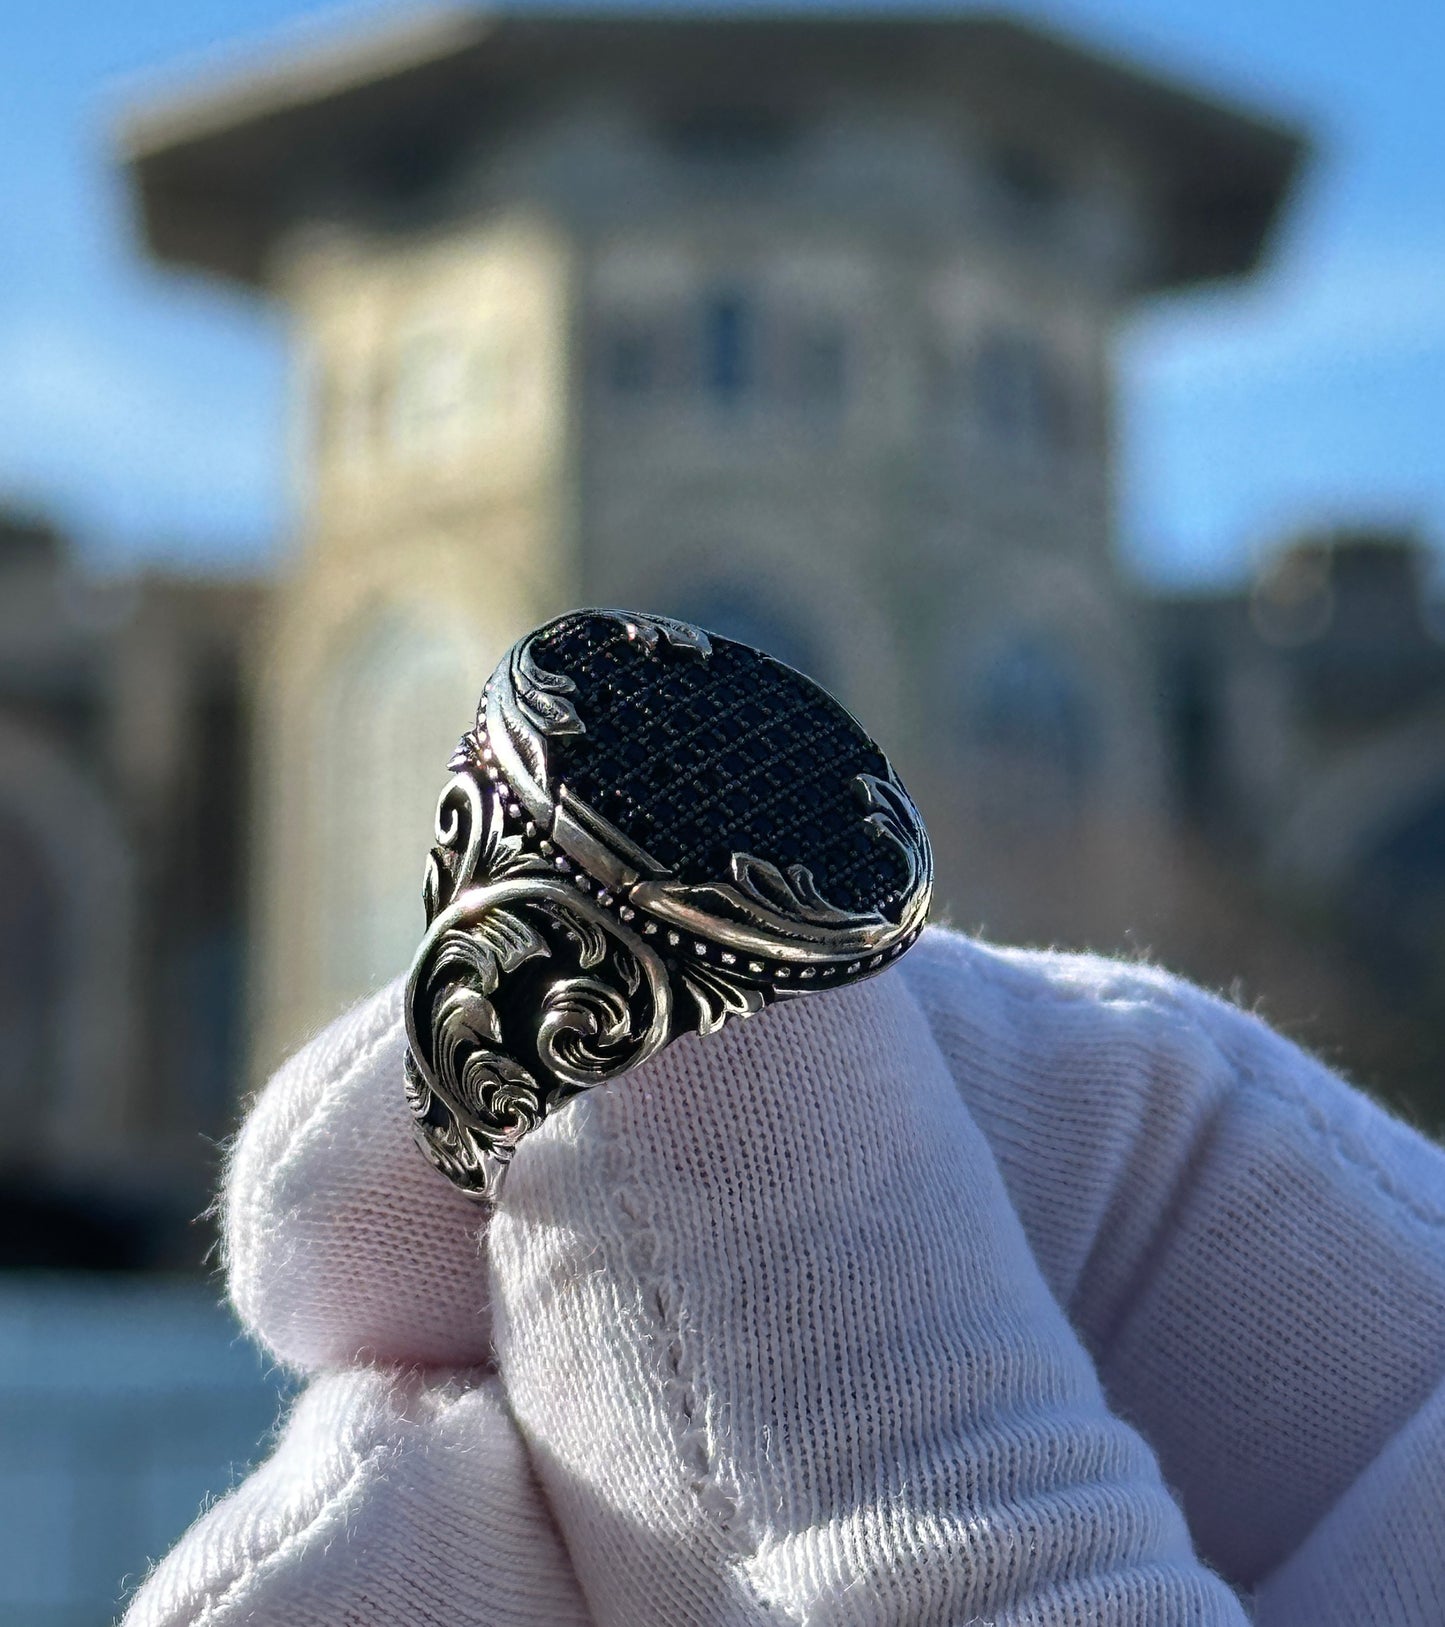 Handgefertigter Herren-Ring aus schwarzem Onyx-Stein mit Gravur